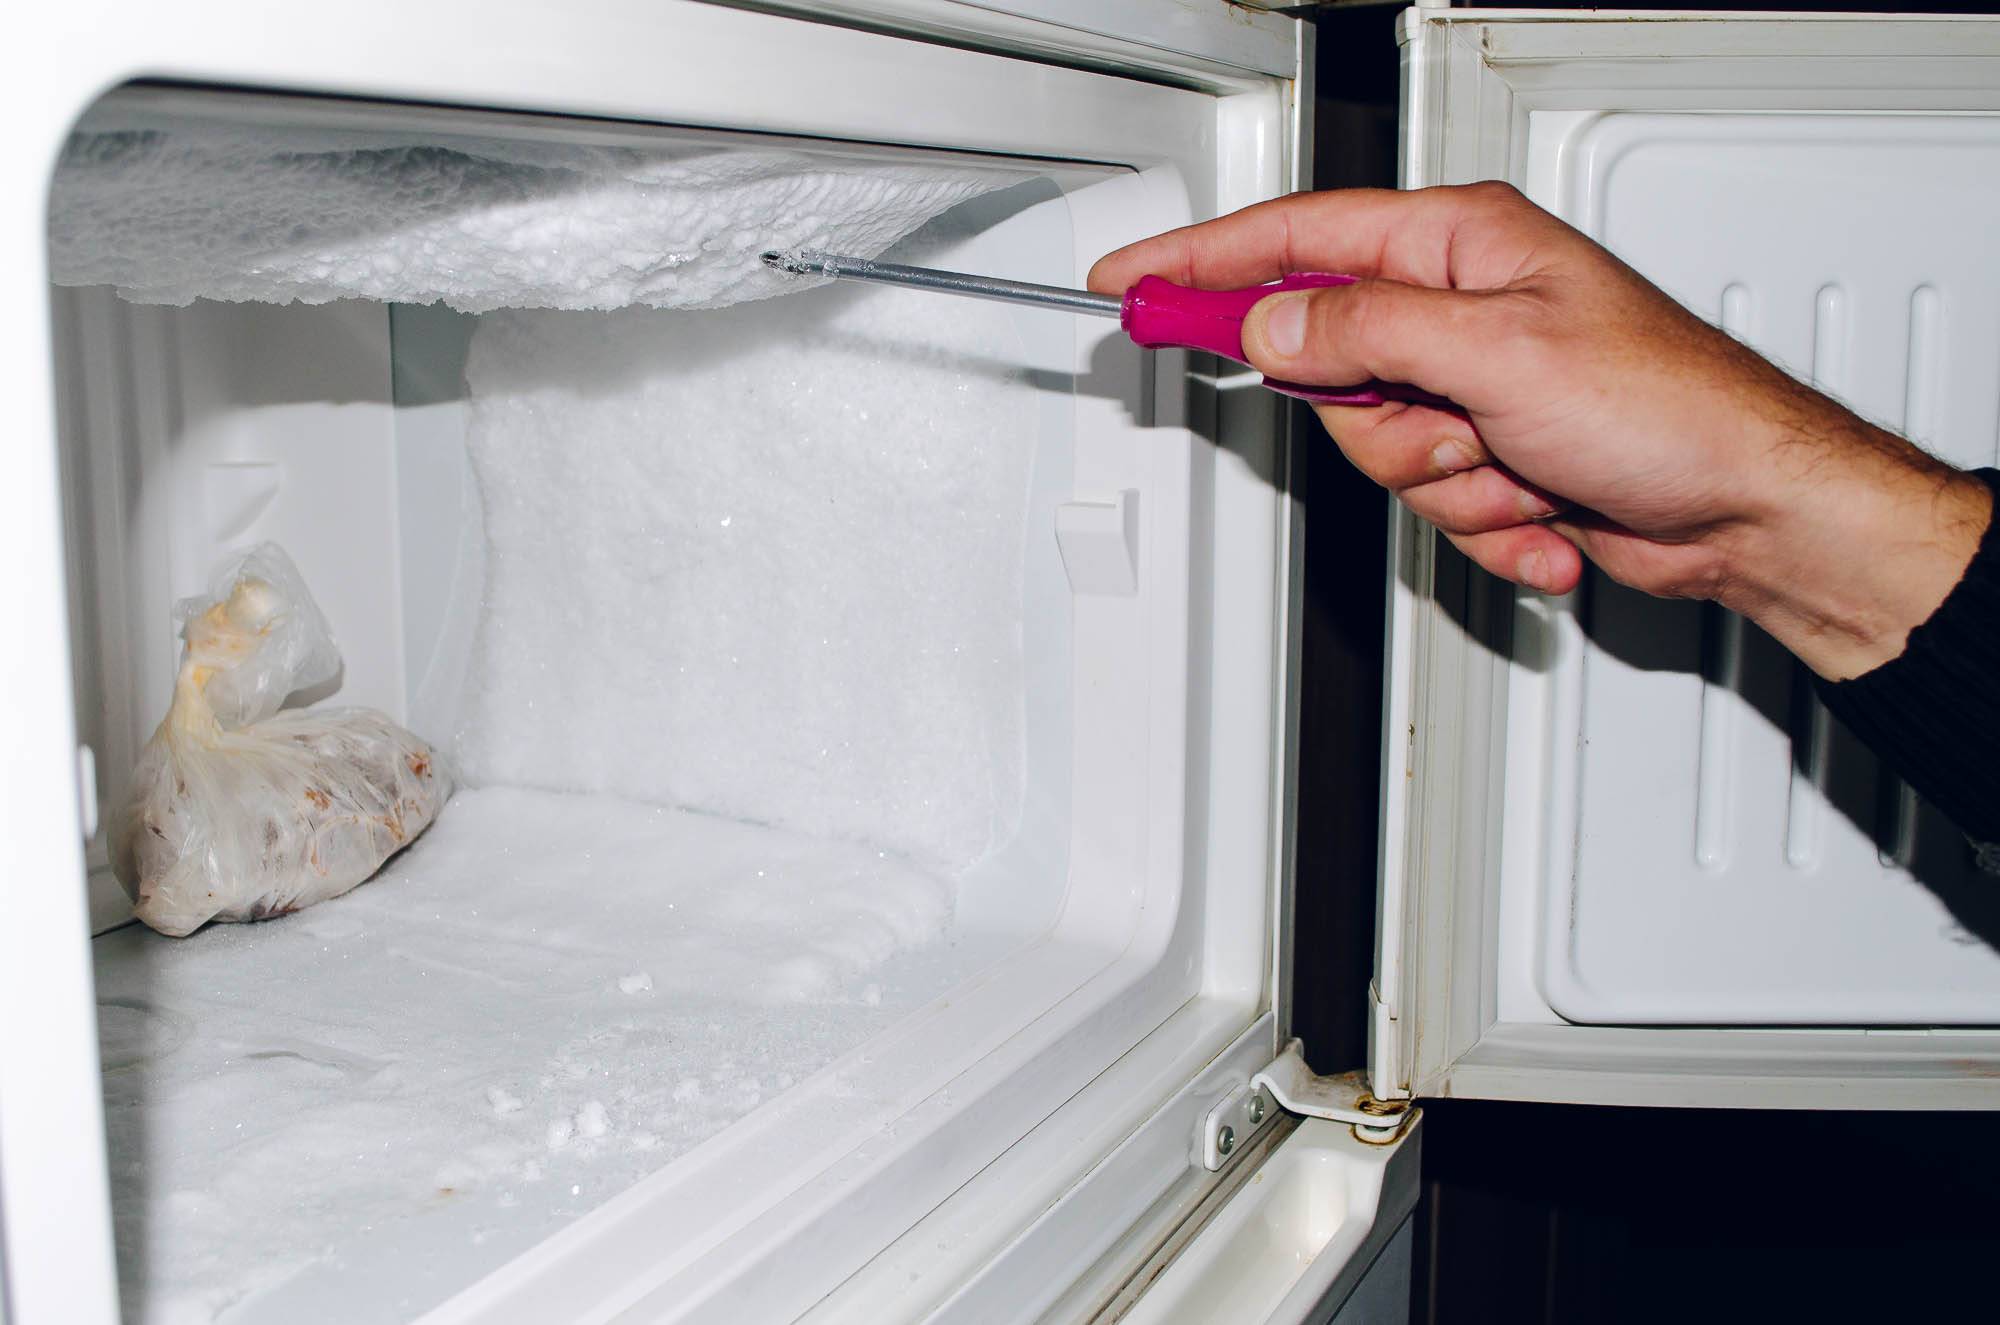 Почему перестал работать холодильник: причины и что делать